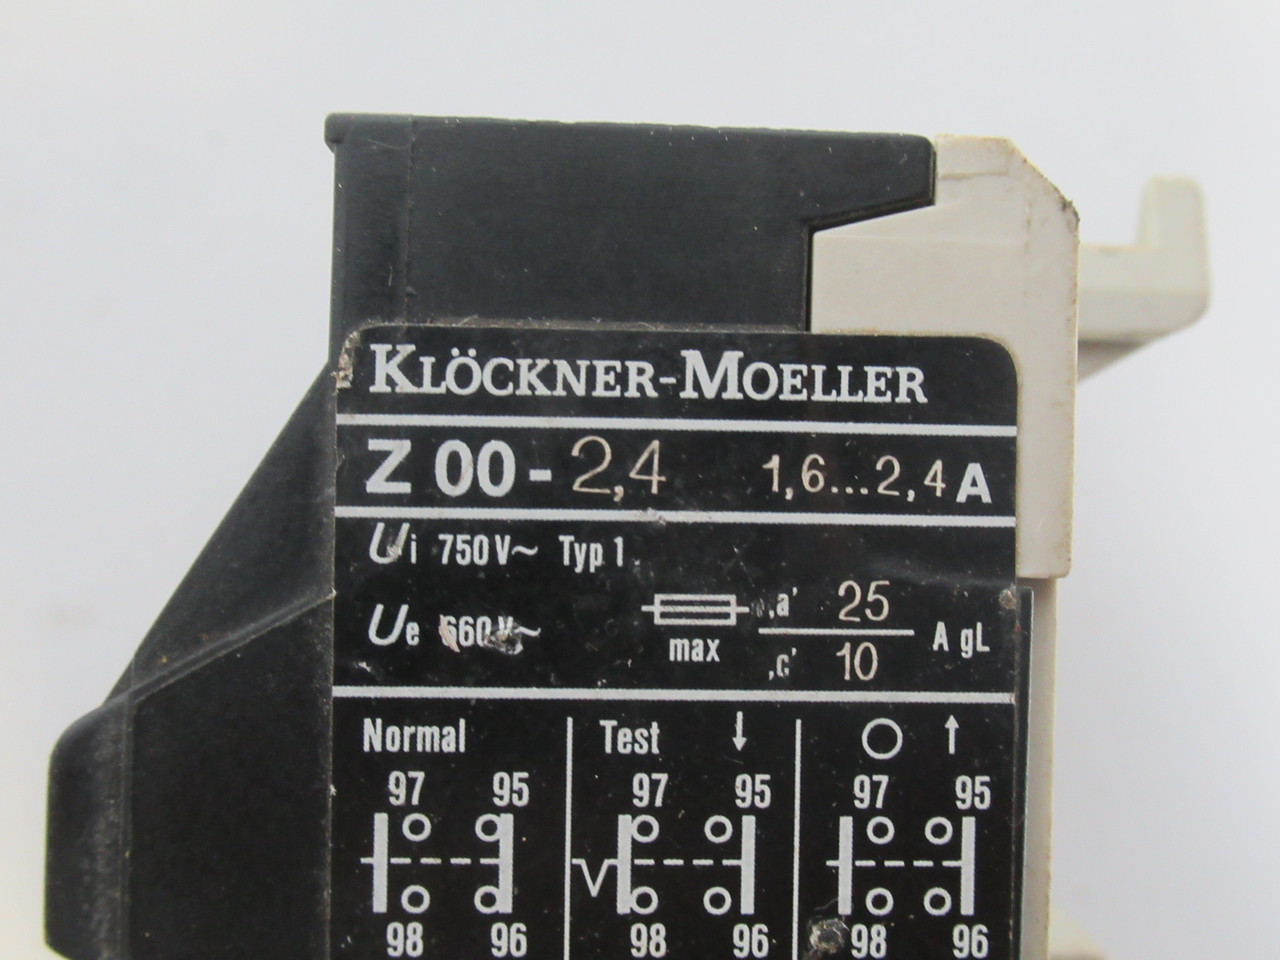 Klockner-Moeller Z00-2.4 Thermal Overload Relay 1.6-2.4A USED